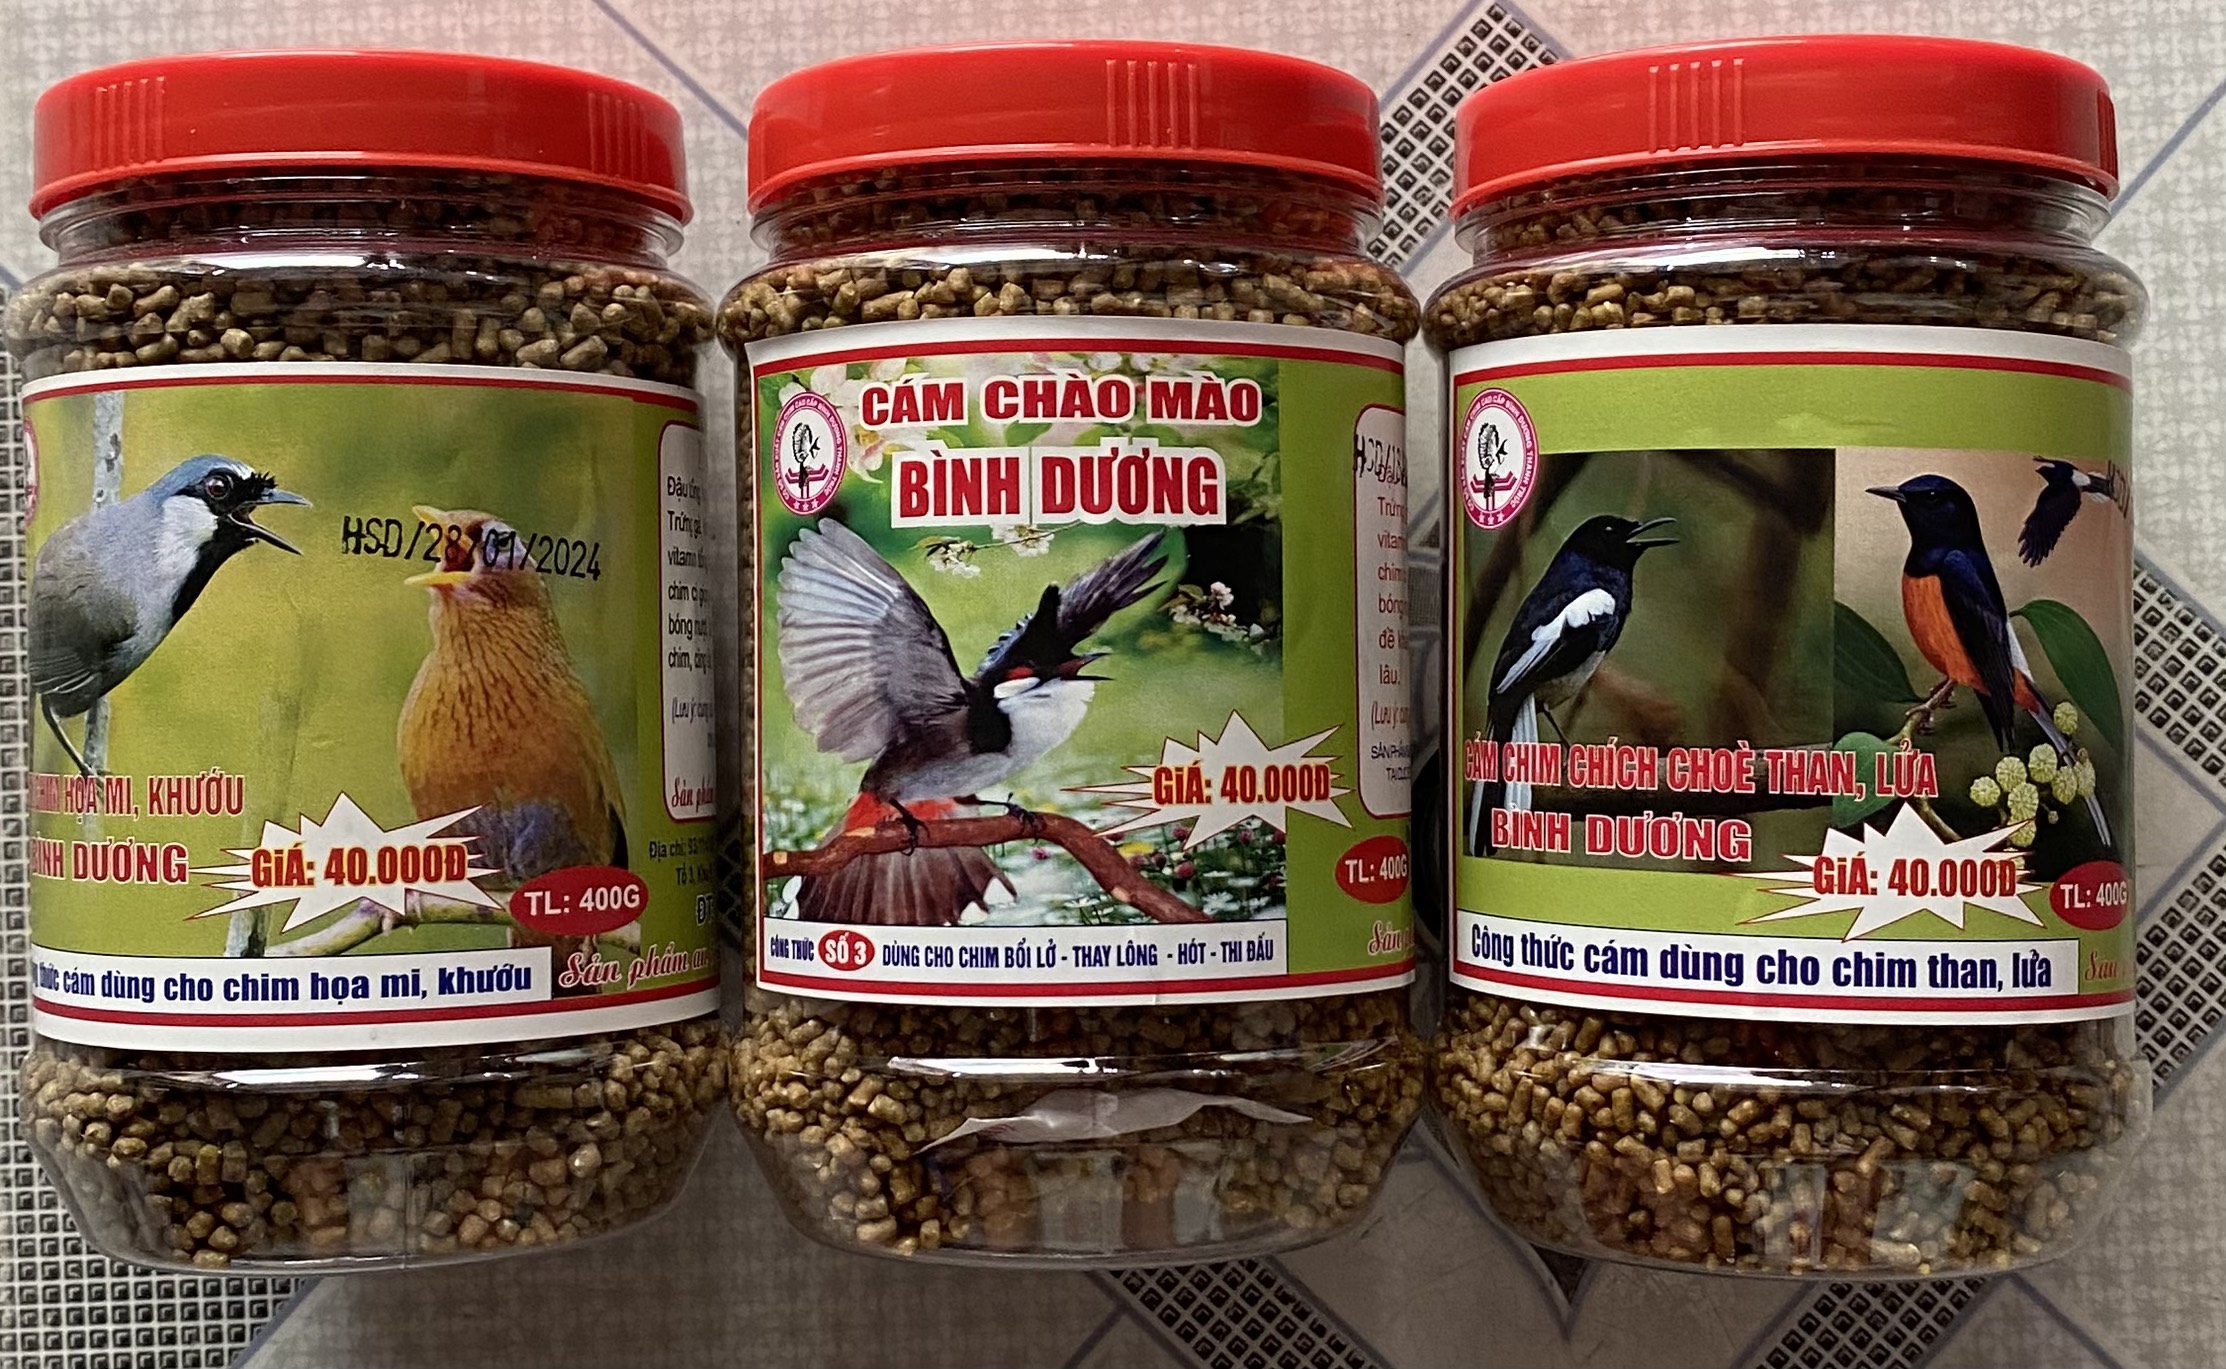 Cám khuyên Thúy Tuấn số 2 cao cấp 100gram Cám chim khuyên Thúy Tuấn cao cấp  LOVECHIM Thức ăn cho chim giá rẻ - MixASale